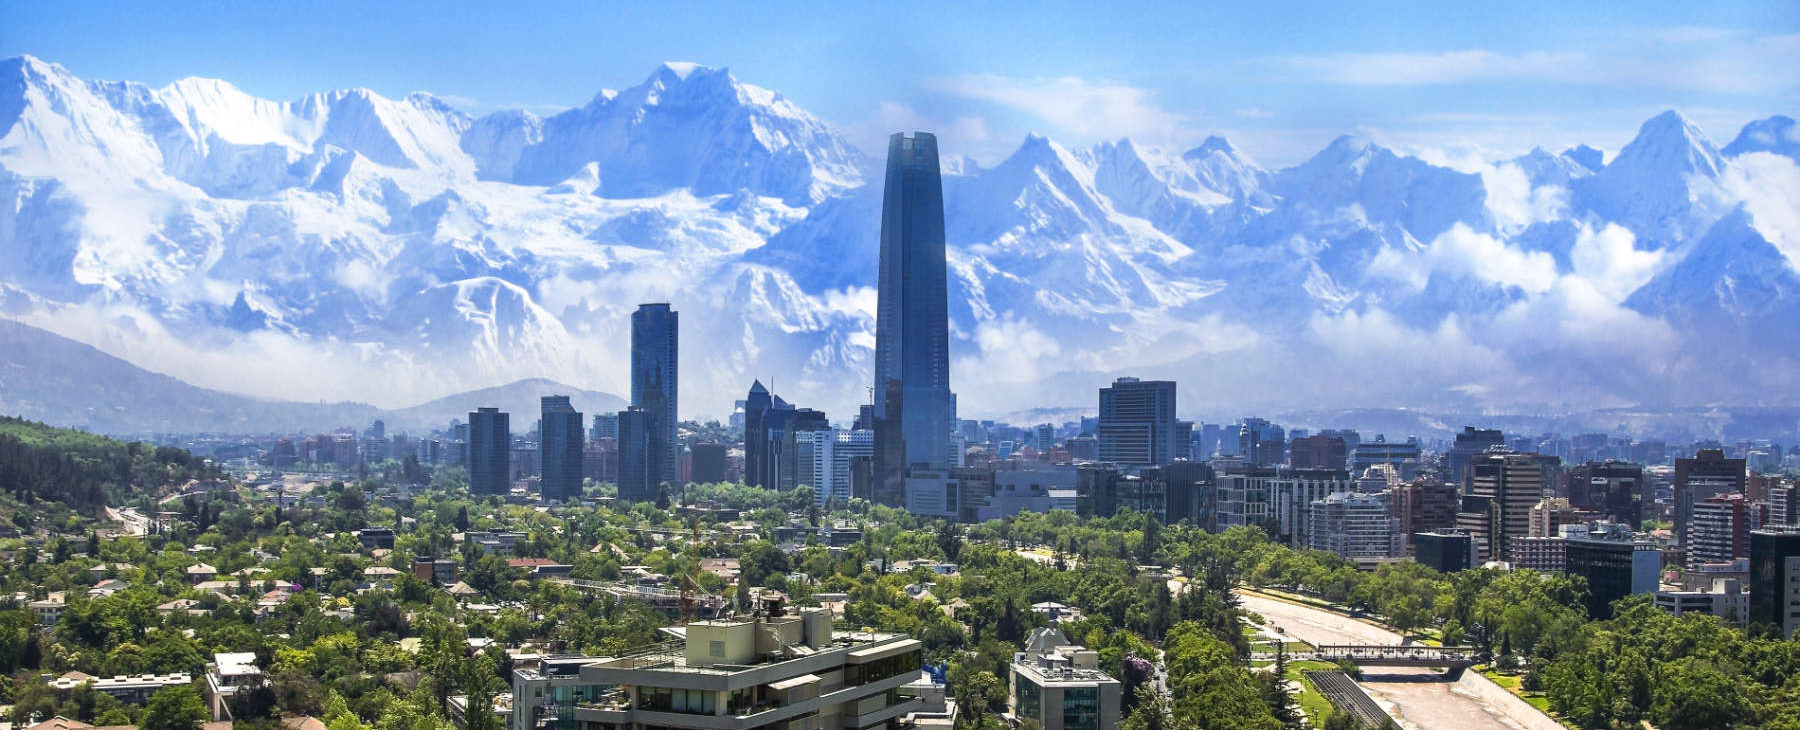 Luxusreisen Luxusurlaub Chile Argentum Reisen